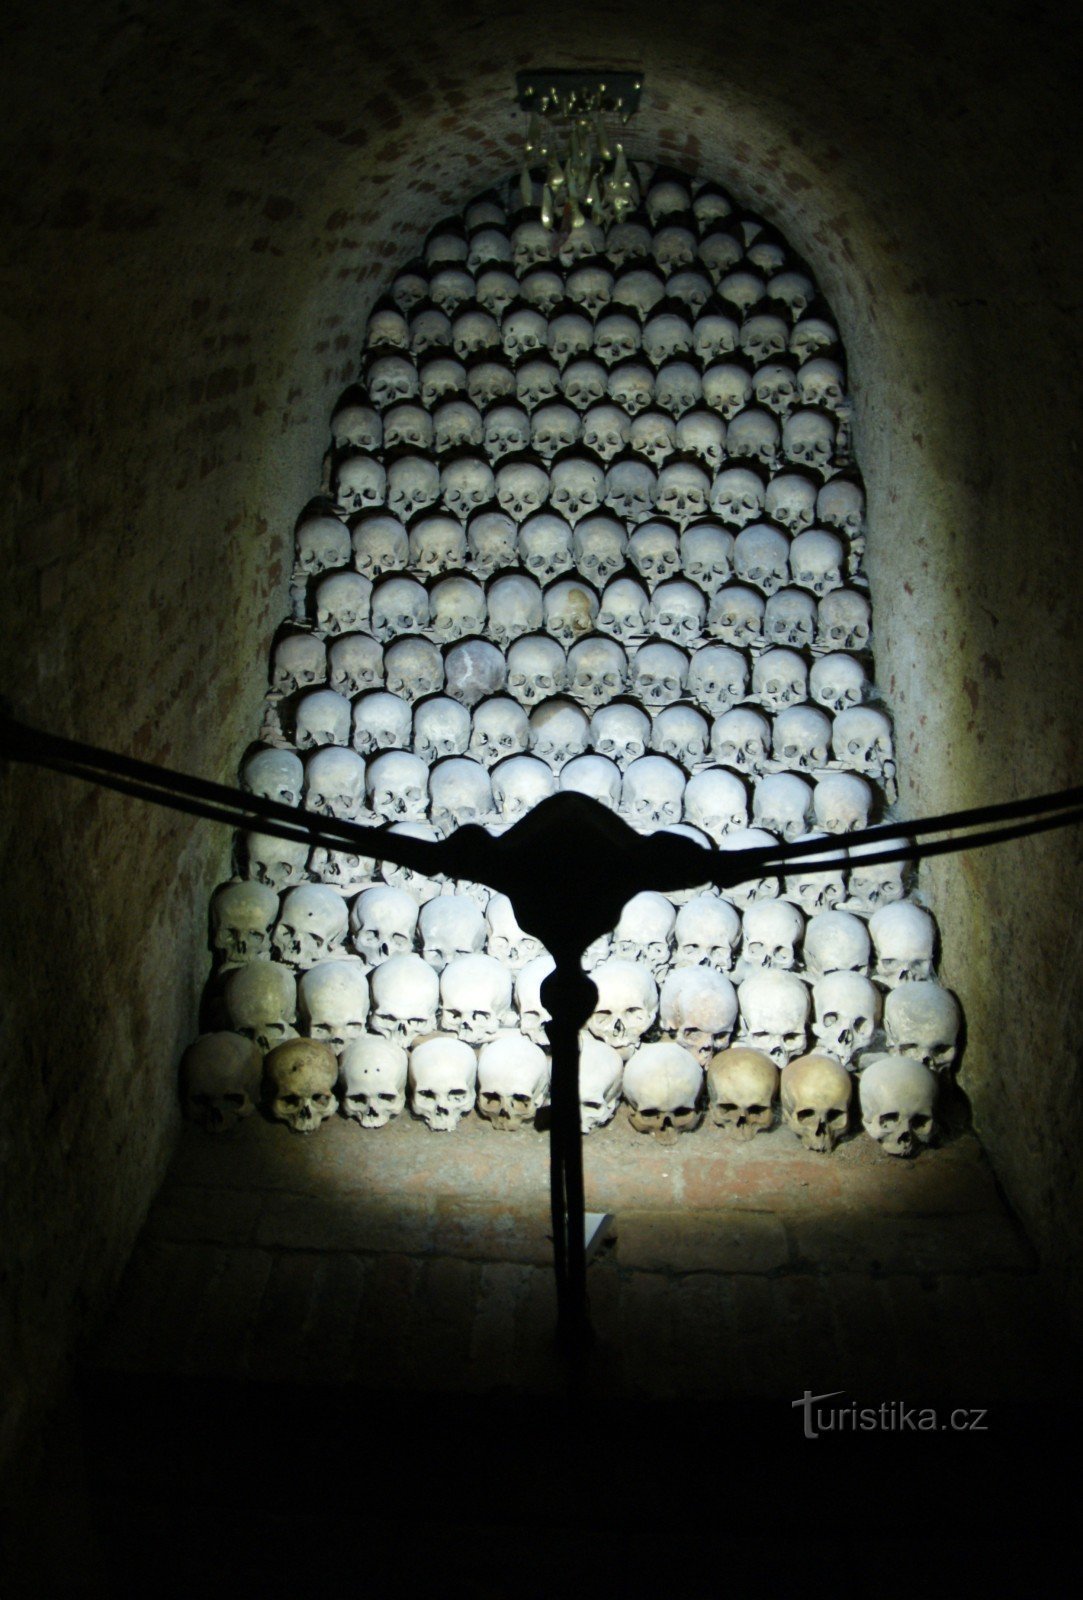 bộ sưu tập hộp sọ dưới thời cũ nghĩa trang